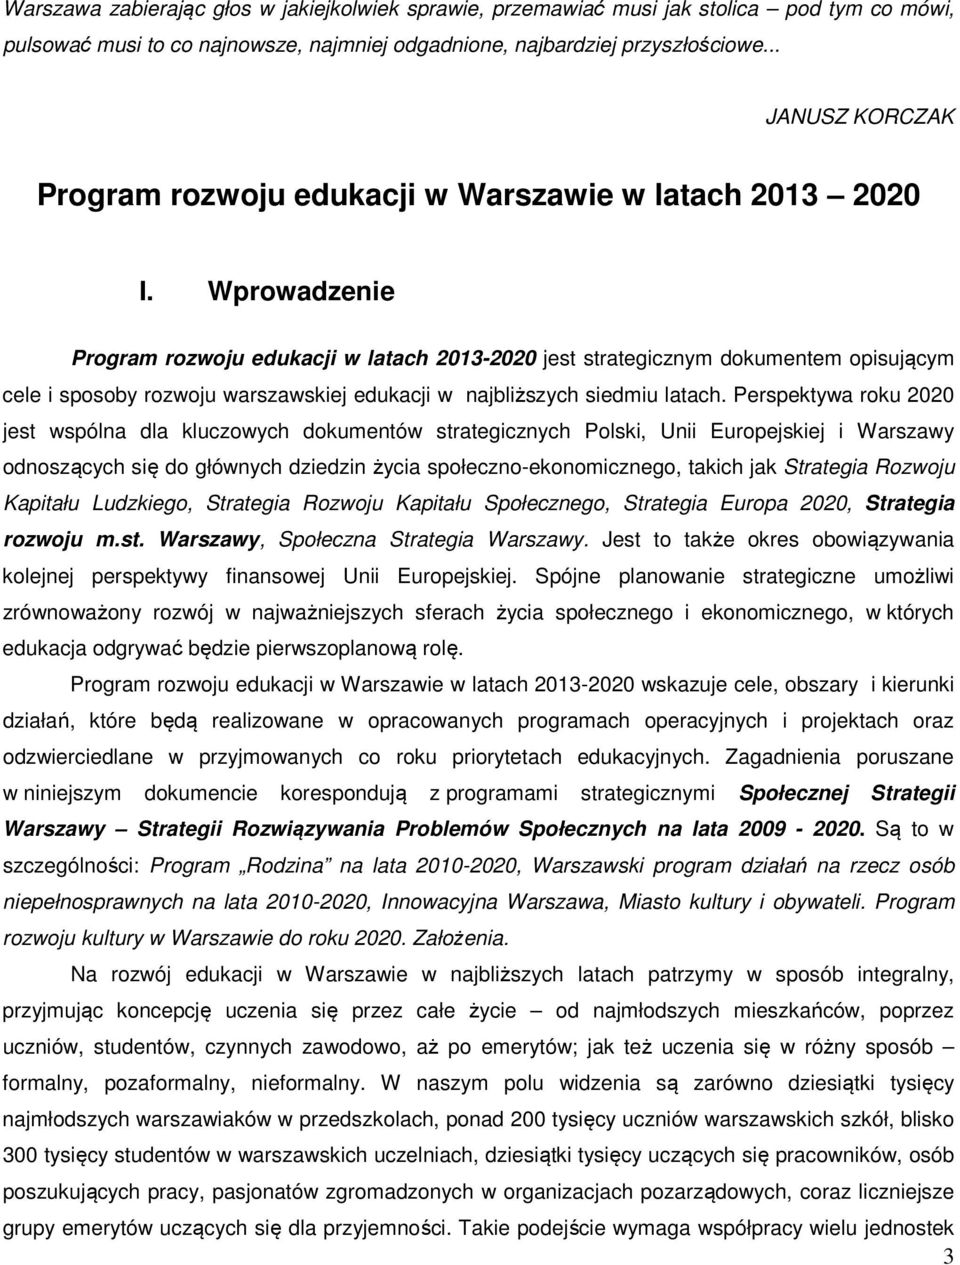 Wprowadzenie Program rozwoju edukacji w latach 2013-2020 jest strategicznym dokumentem opisującym cele i sposoby rozwoju warszawskiej edukacji w najbliższych siedmiu latach.